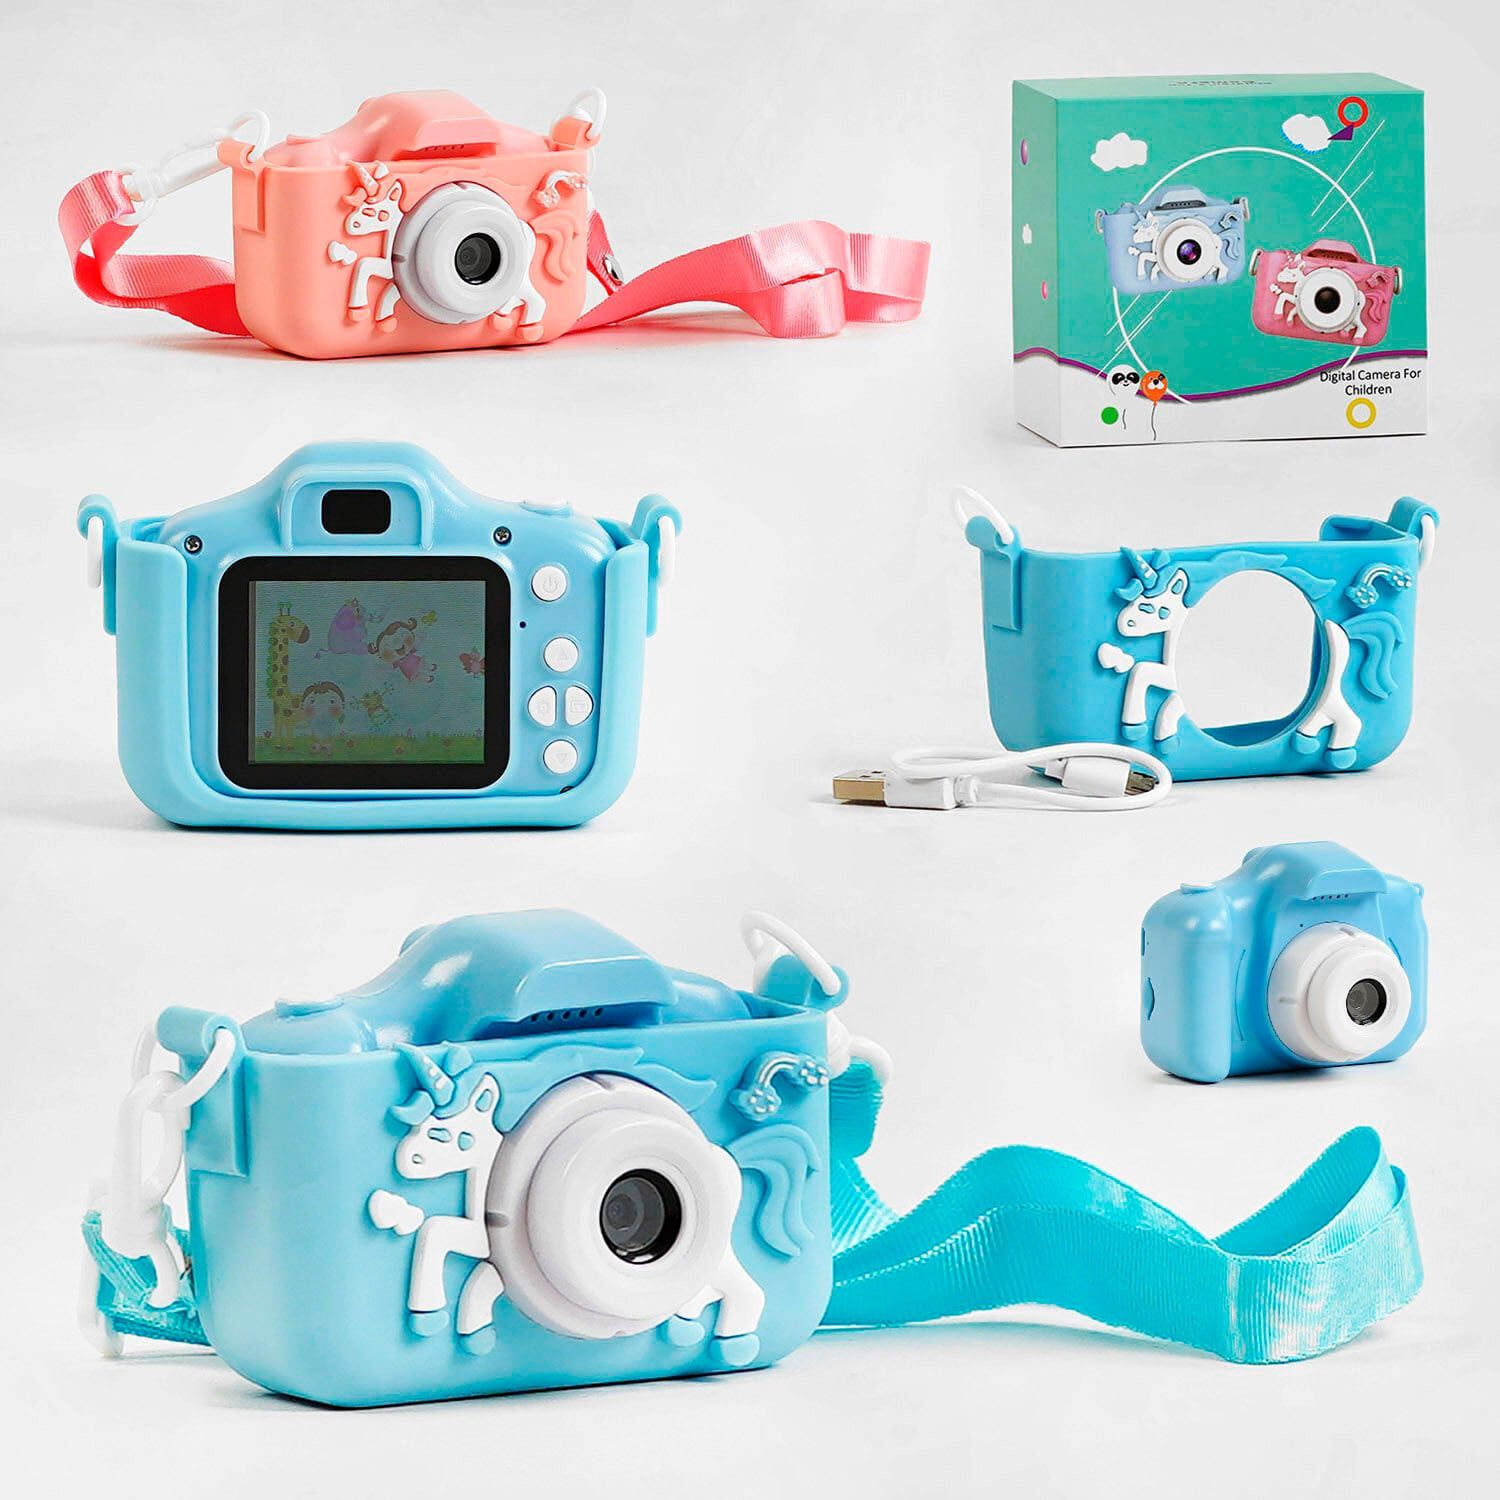 Фотоаппарат детский (C 58326 / 56662) 2 цвета, видео, фото, игры, прослушивание музыки, поддерживает microSD, в коробке